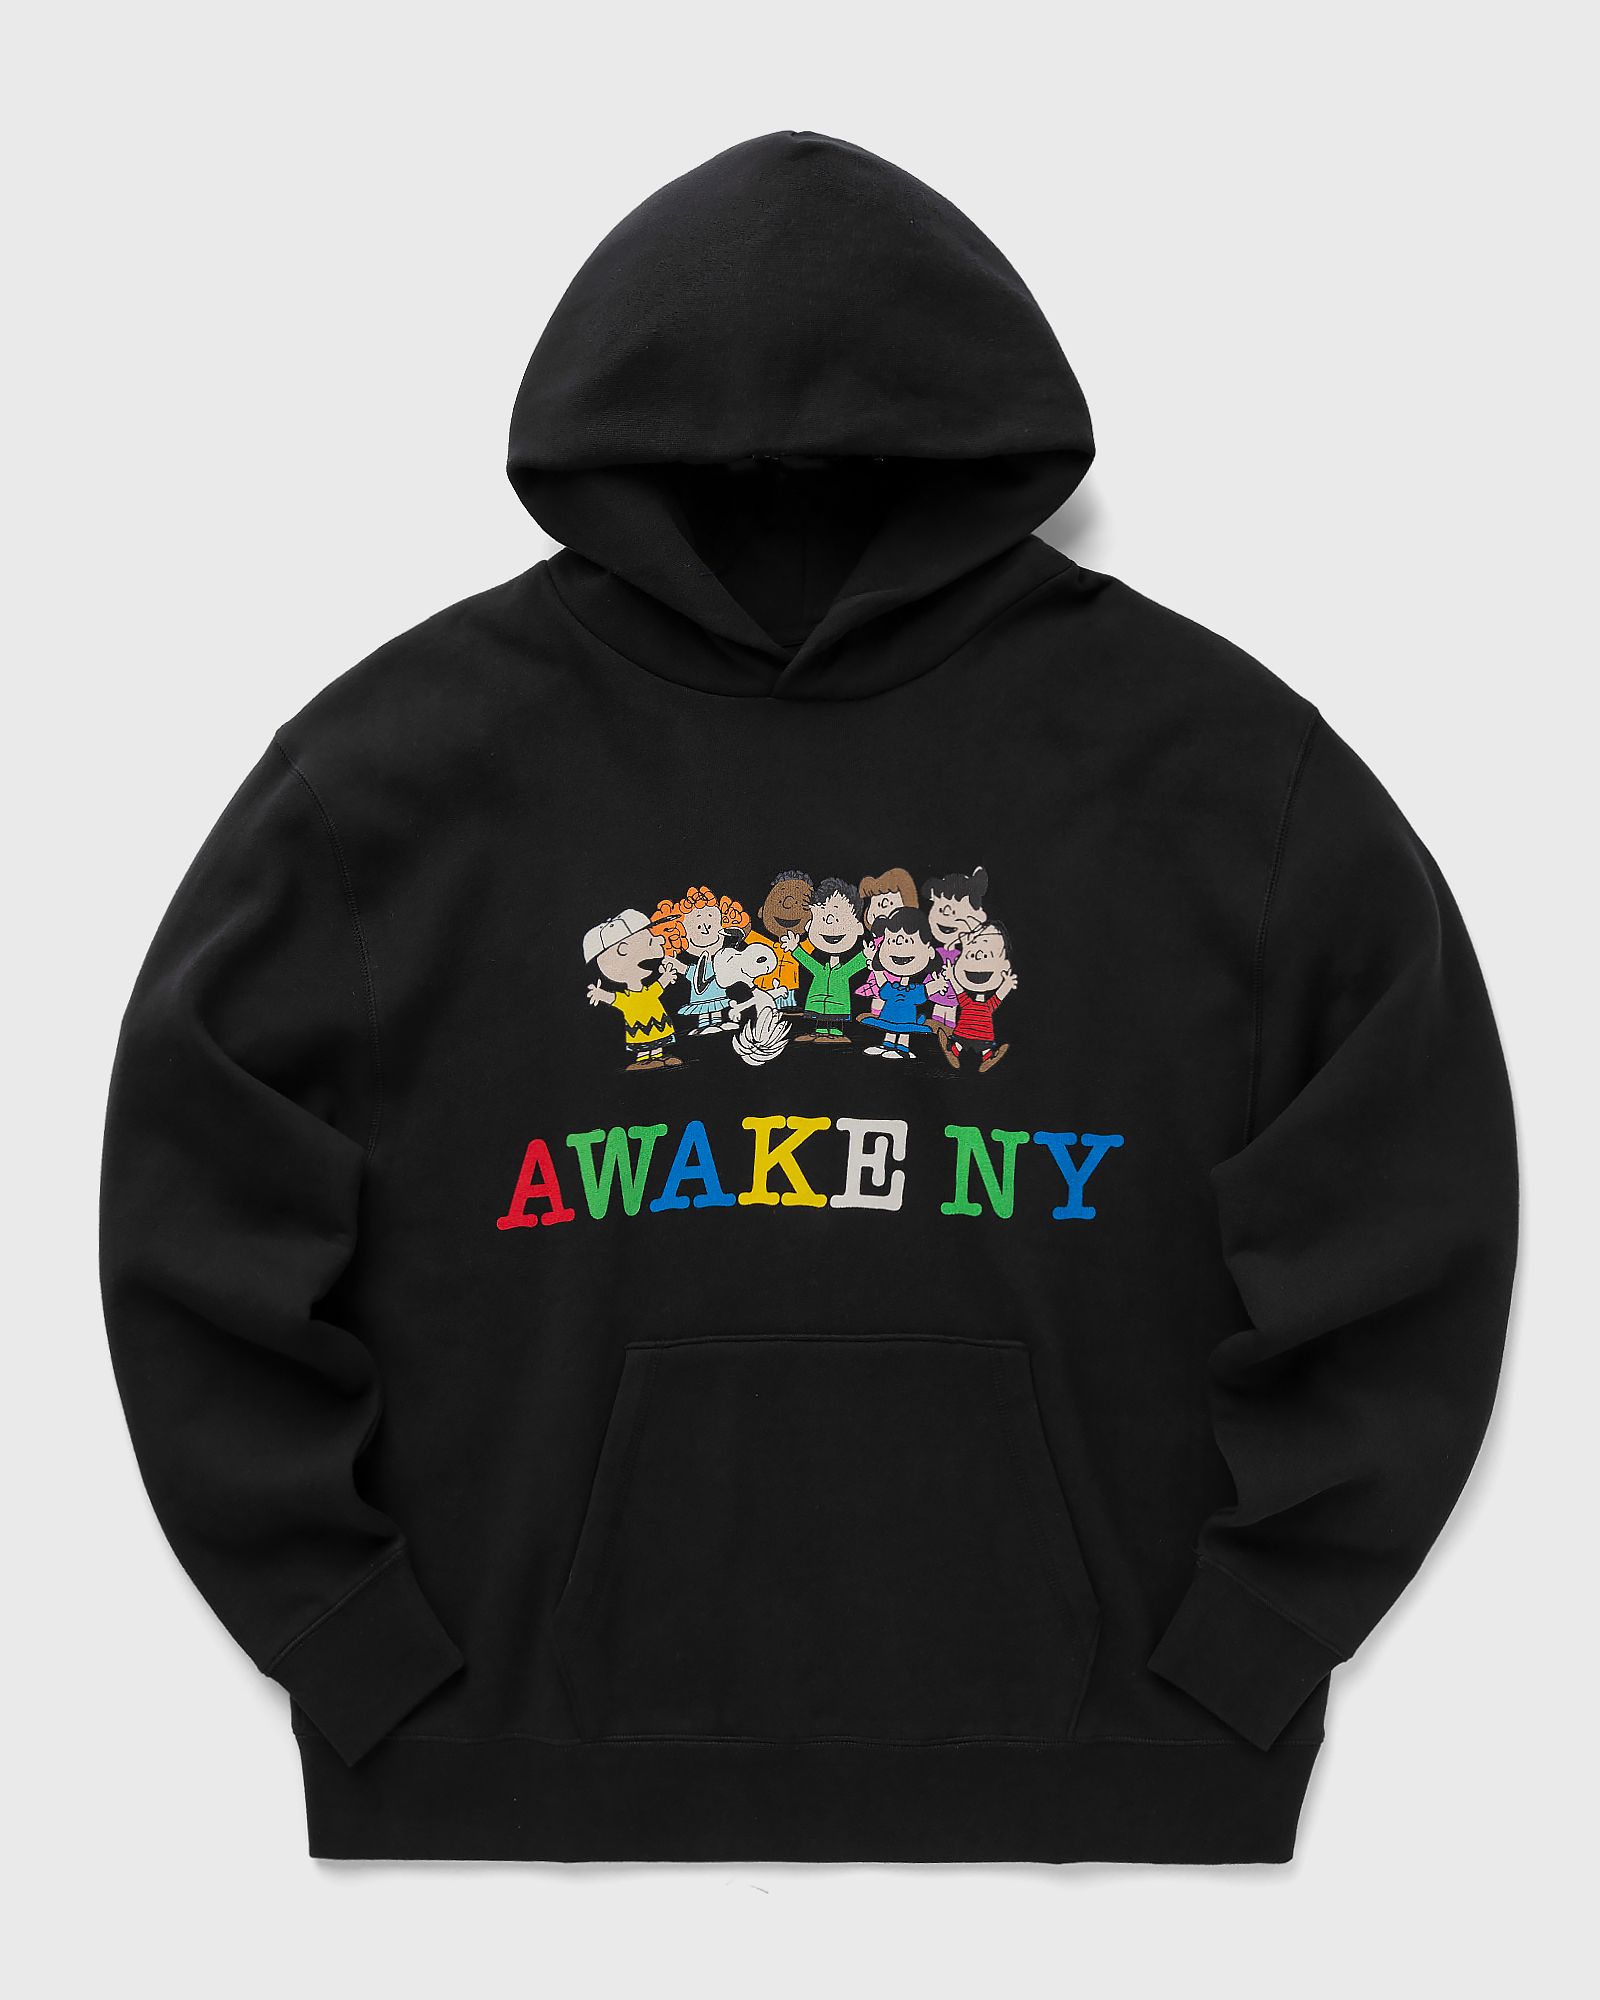 Awake - ny x peanuts printed hoodie men hoodies black in größe:m